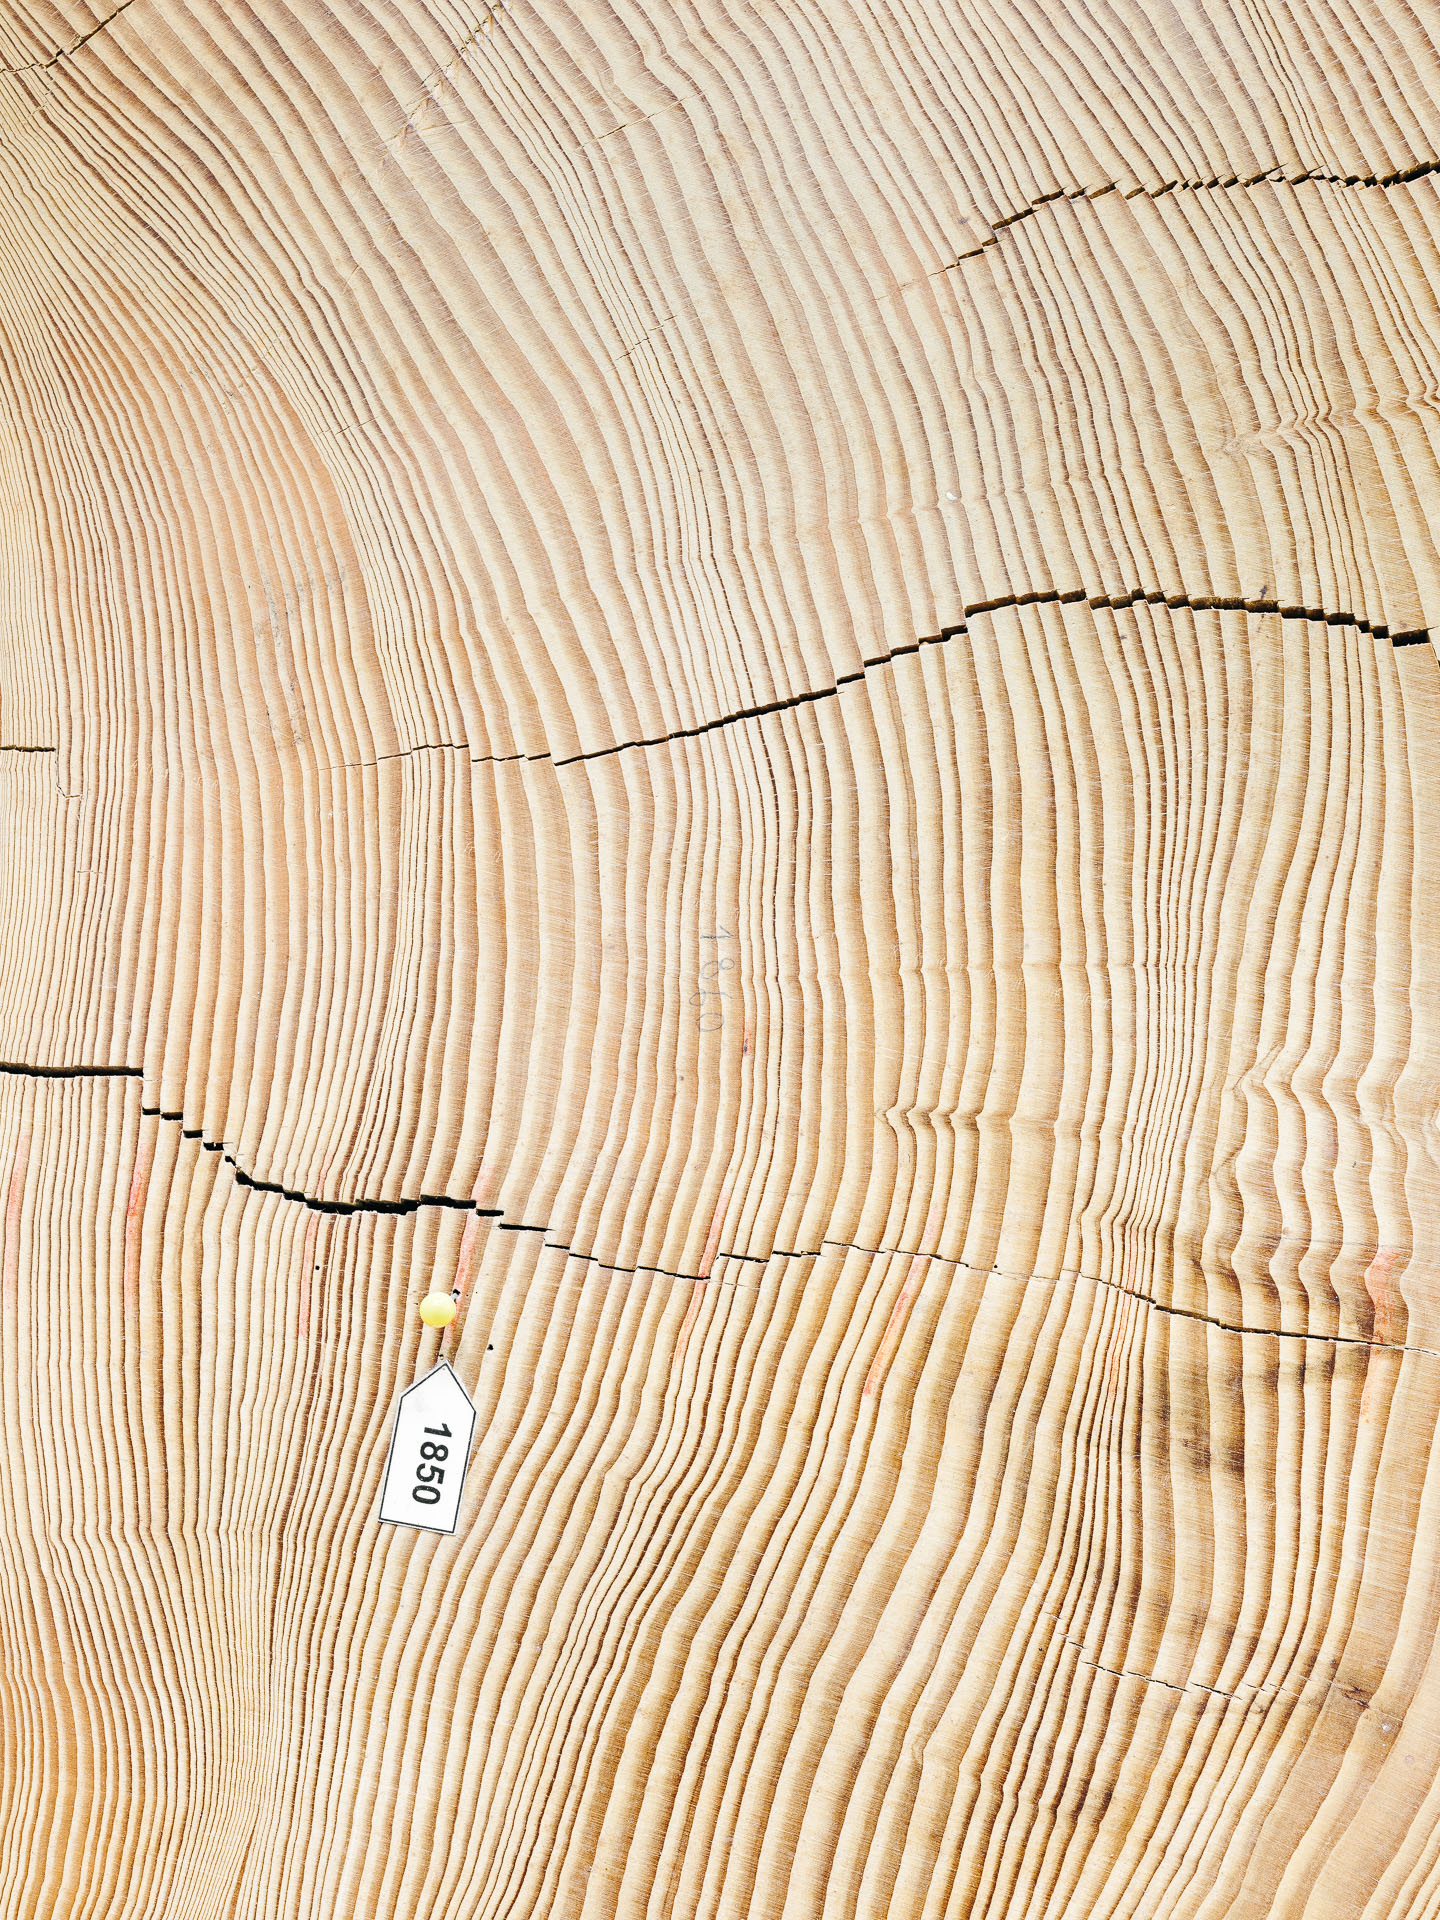 Die Baumscheibe eines Baumes, der im 19. Jahrhundert wuchs. Sie ist Teil des Hohenheimer Jahrringkalenders, der eine Rekonstruktion des Klimas der vergangenen 12.000 Jahre in der Region erlaubt. 20.10.2021, Hohenheim, Deutschland. © Jan Richard Heinicke